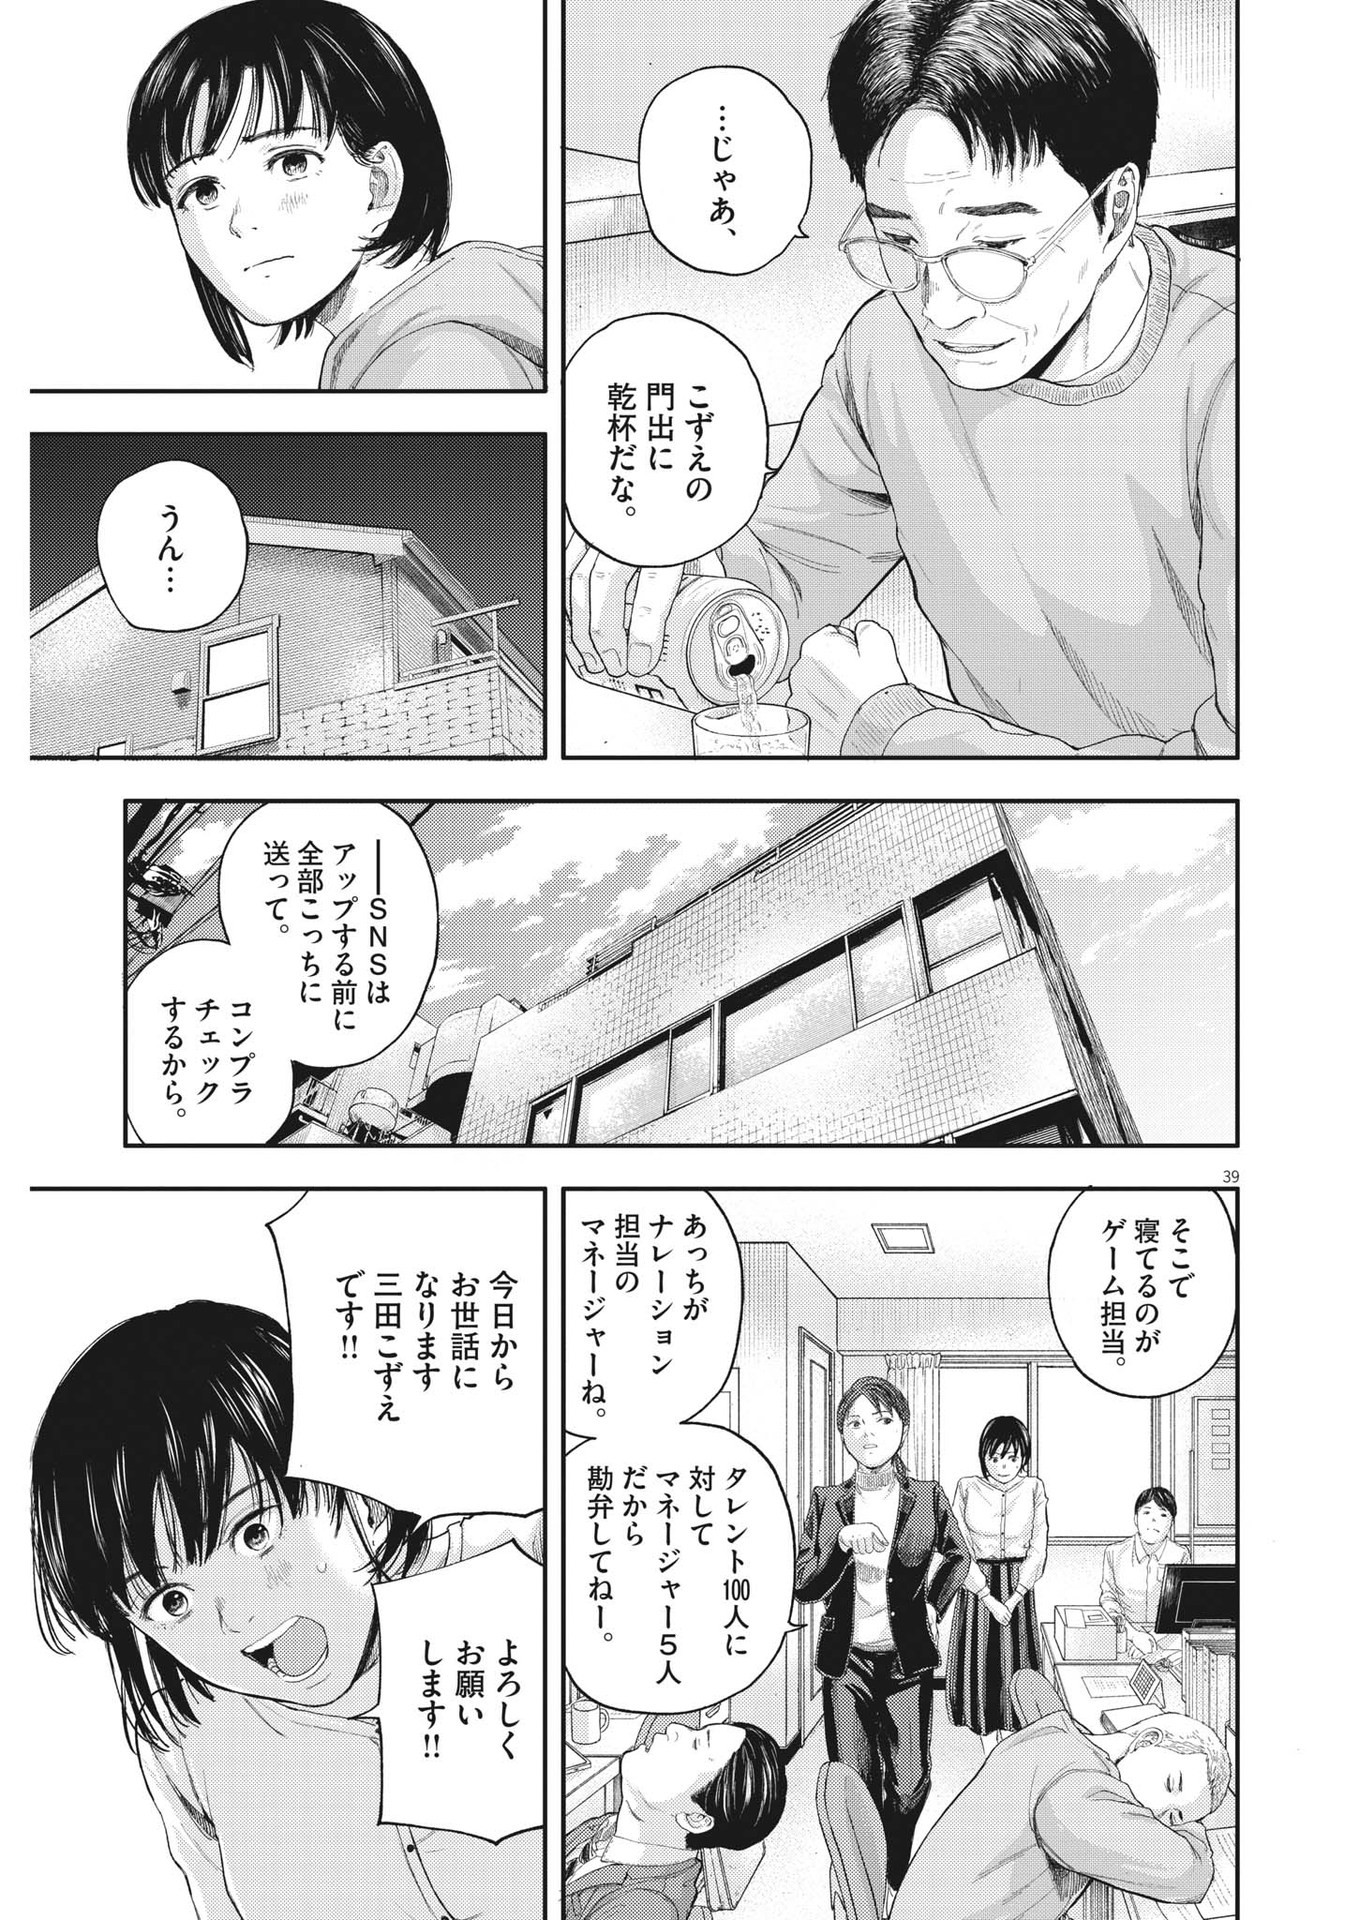 Yumenashi-sensei no Shinroshidou - Chapter 1 - Page 39